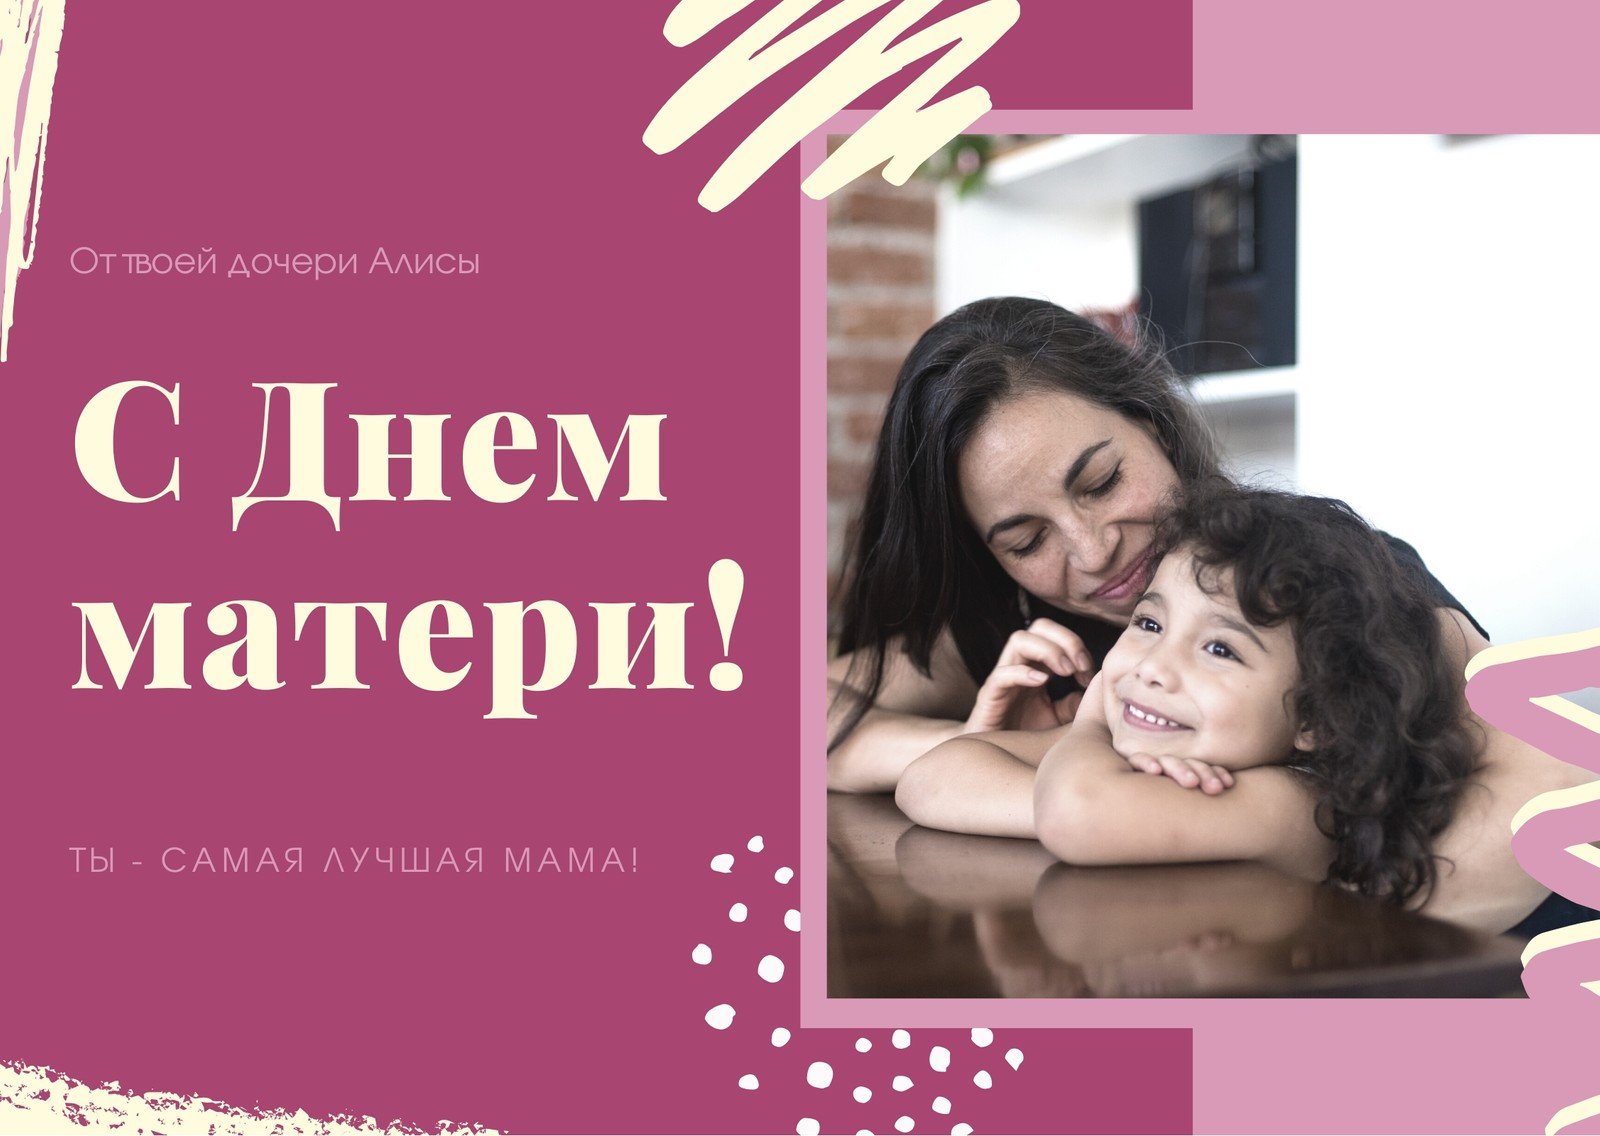 Напиши маме: бесплатно отправить открытки ко Дню матери предложили амурским студентам